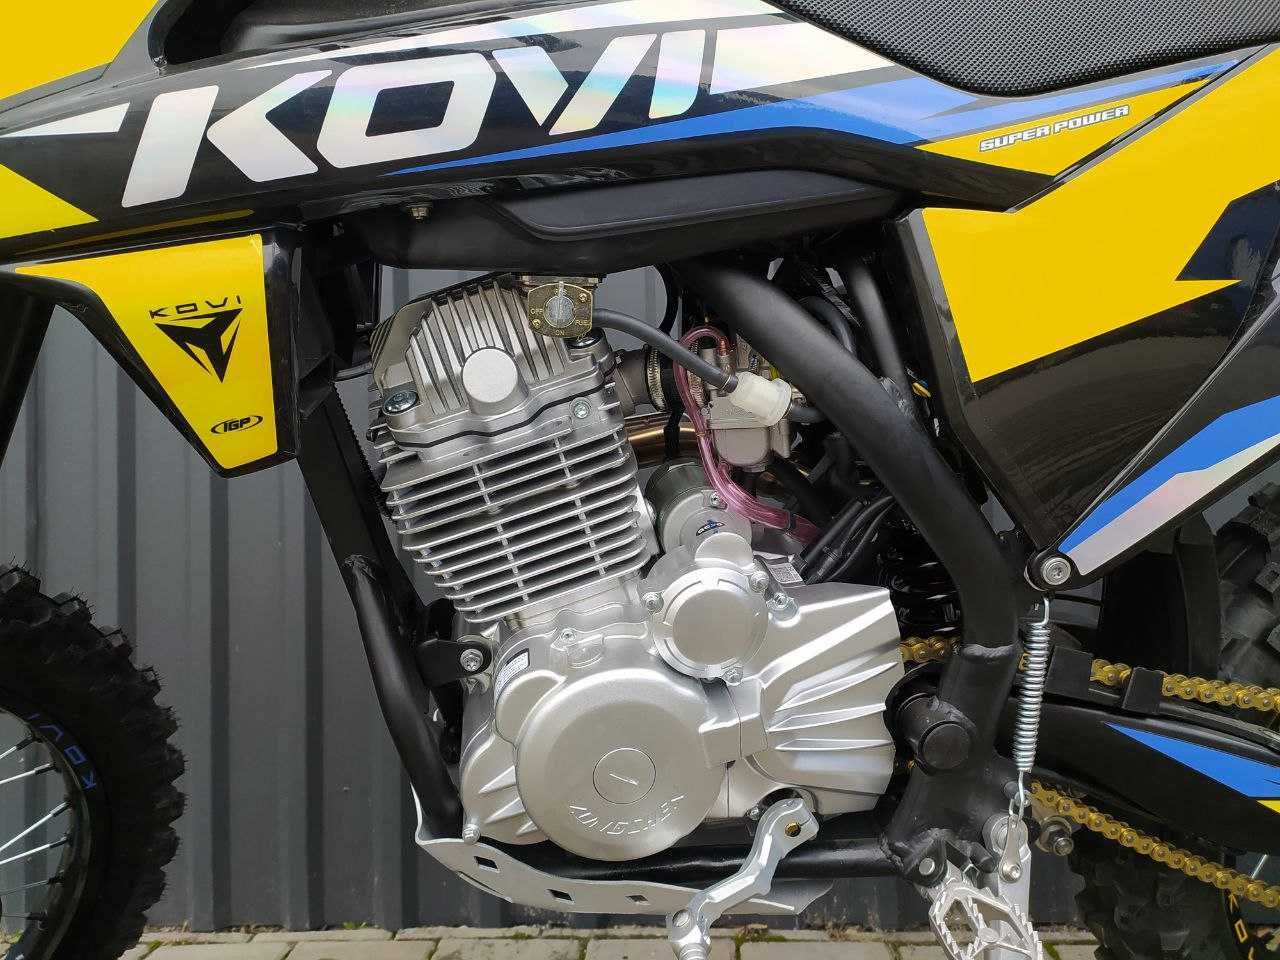 Мотоцикл Kovi 300 Advance. Нова модель. Скоро у салоні.